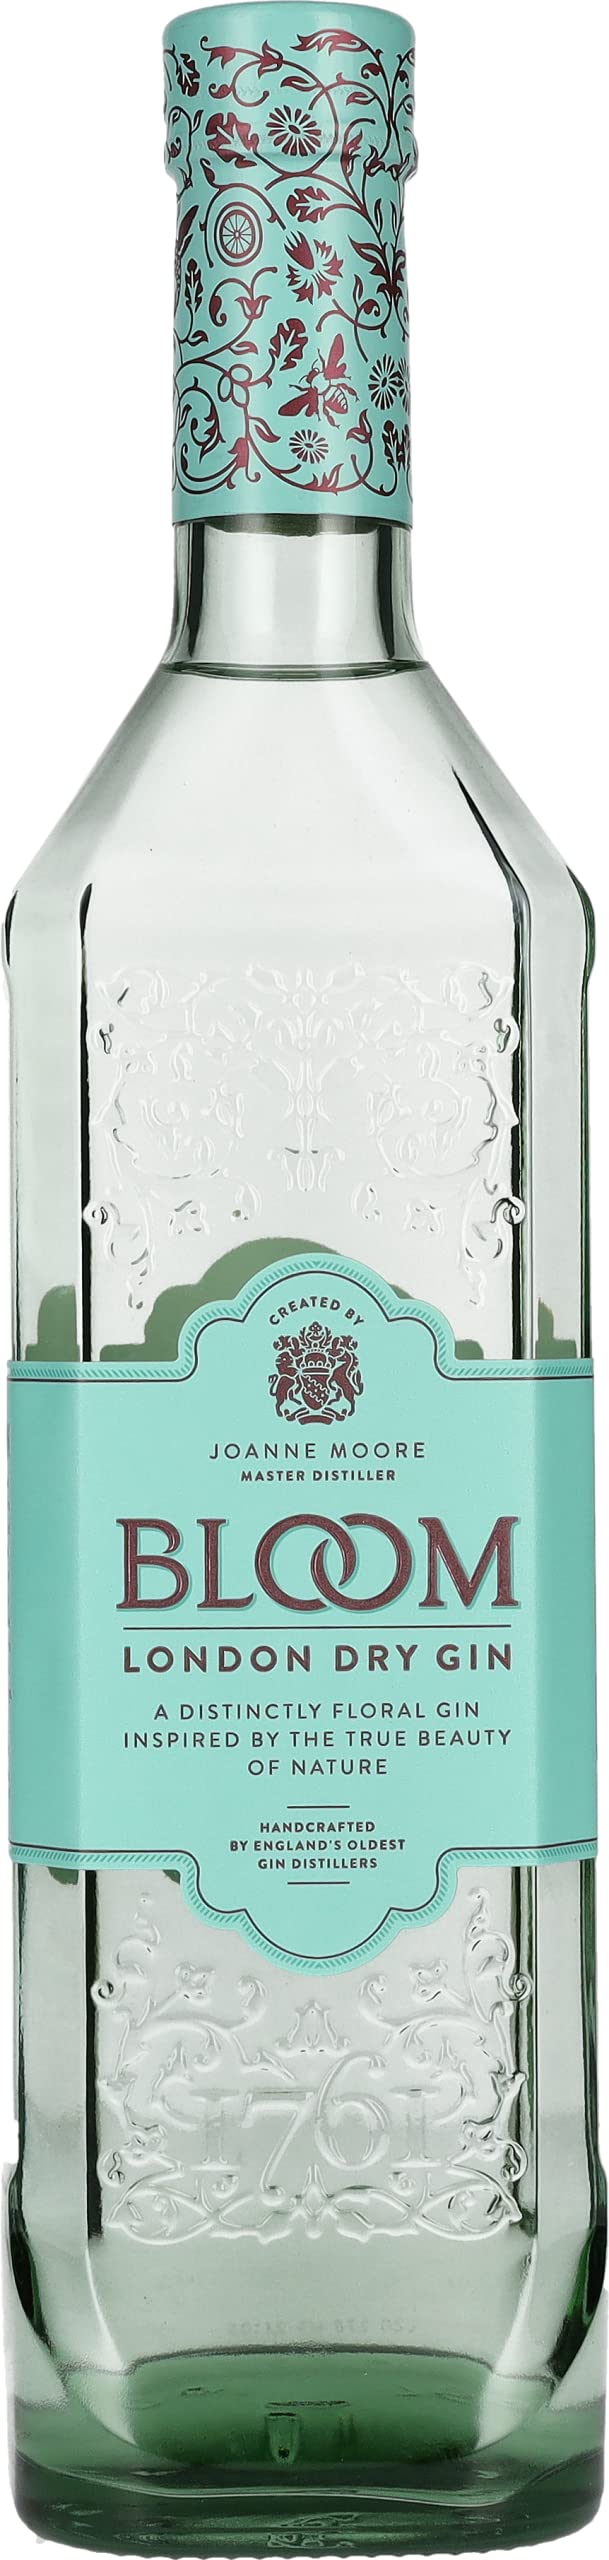 BLOOM London Dry Gin 40% vol., Qualitäts Gin mit fruchtig-floraler Note, Premium Gin, entwickelt von Master Distiller Joanne Moore (1 x 0.7 l)